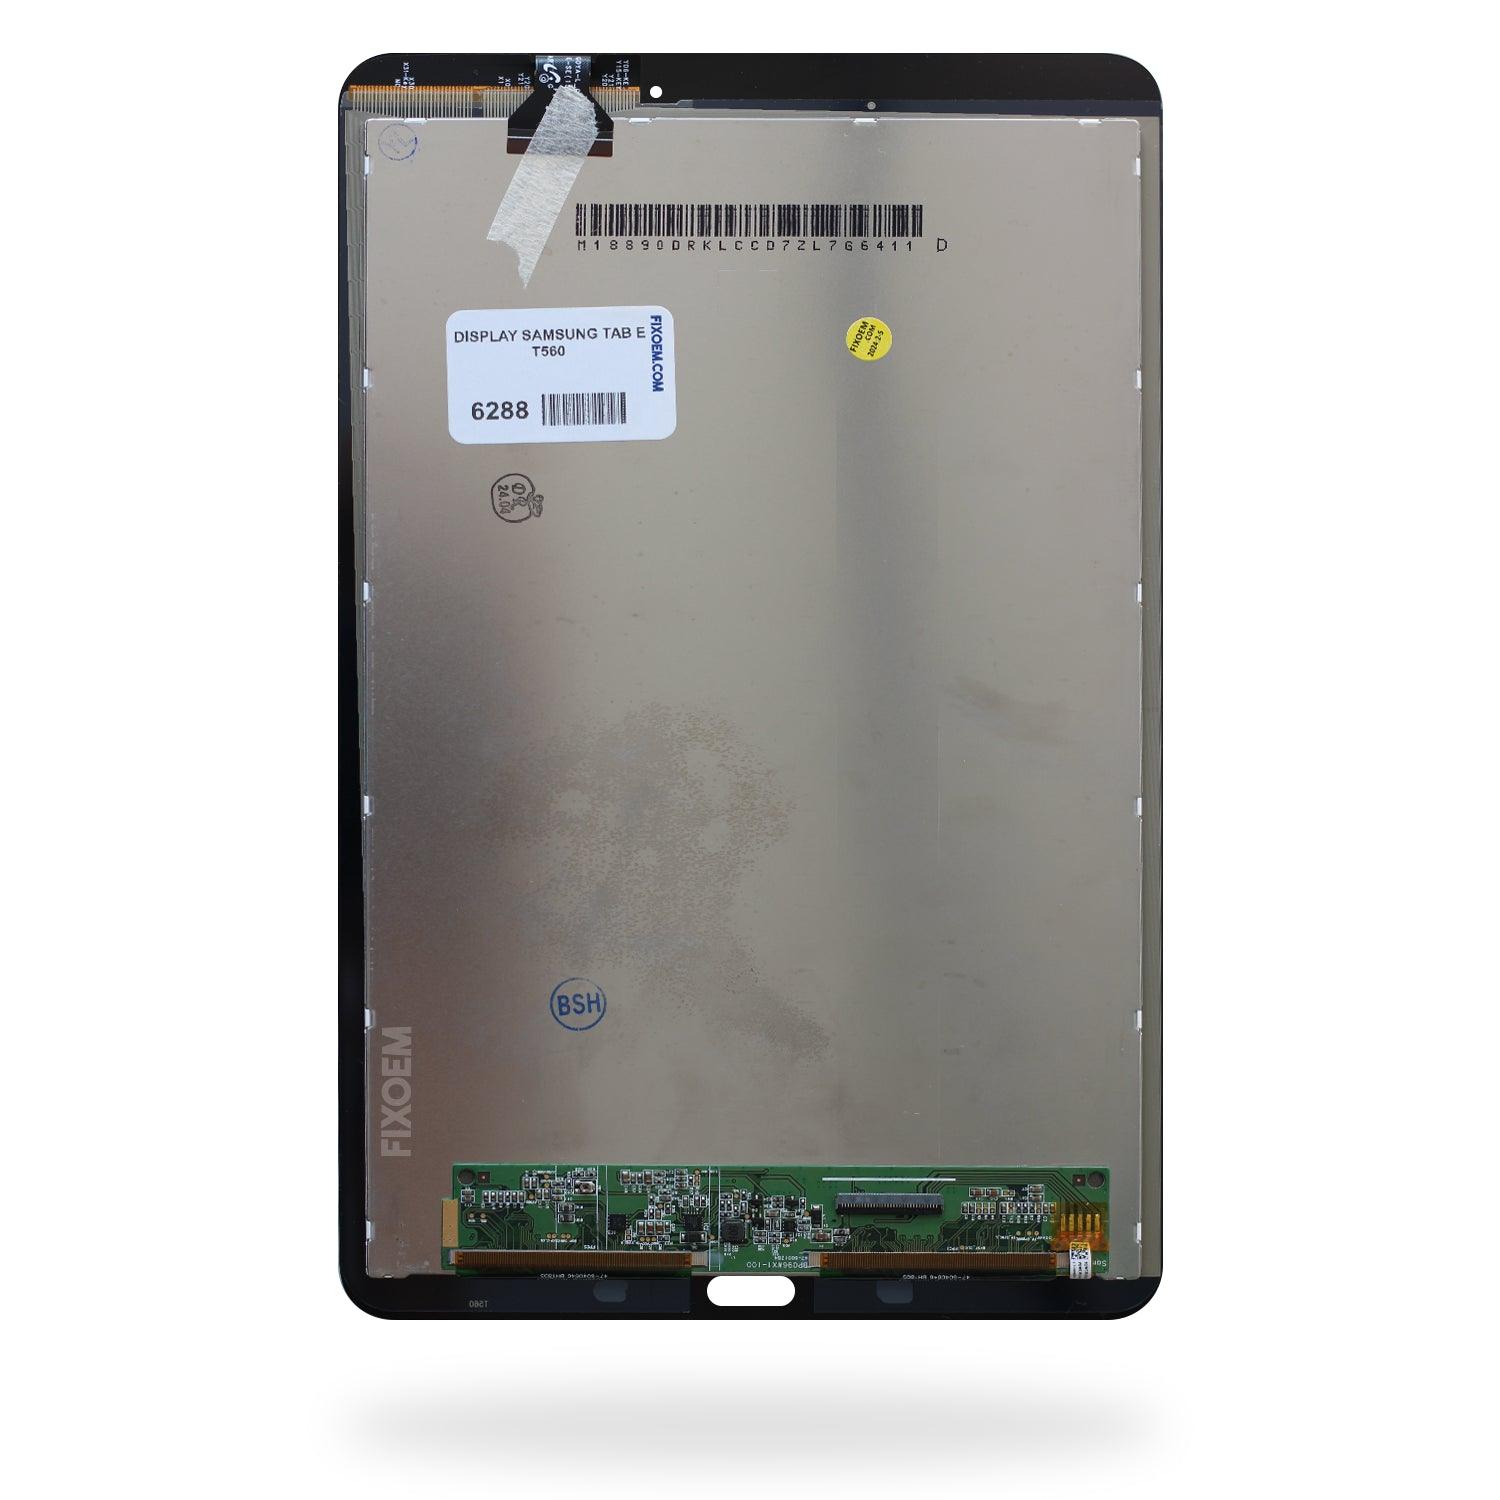 Display Samsung Tab E T560 a solo $ 640.00 Refaccion y puestos celulares, refurbish y microelectronica.- FixOEM